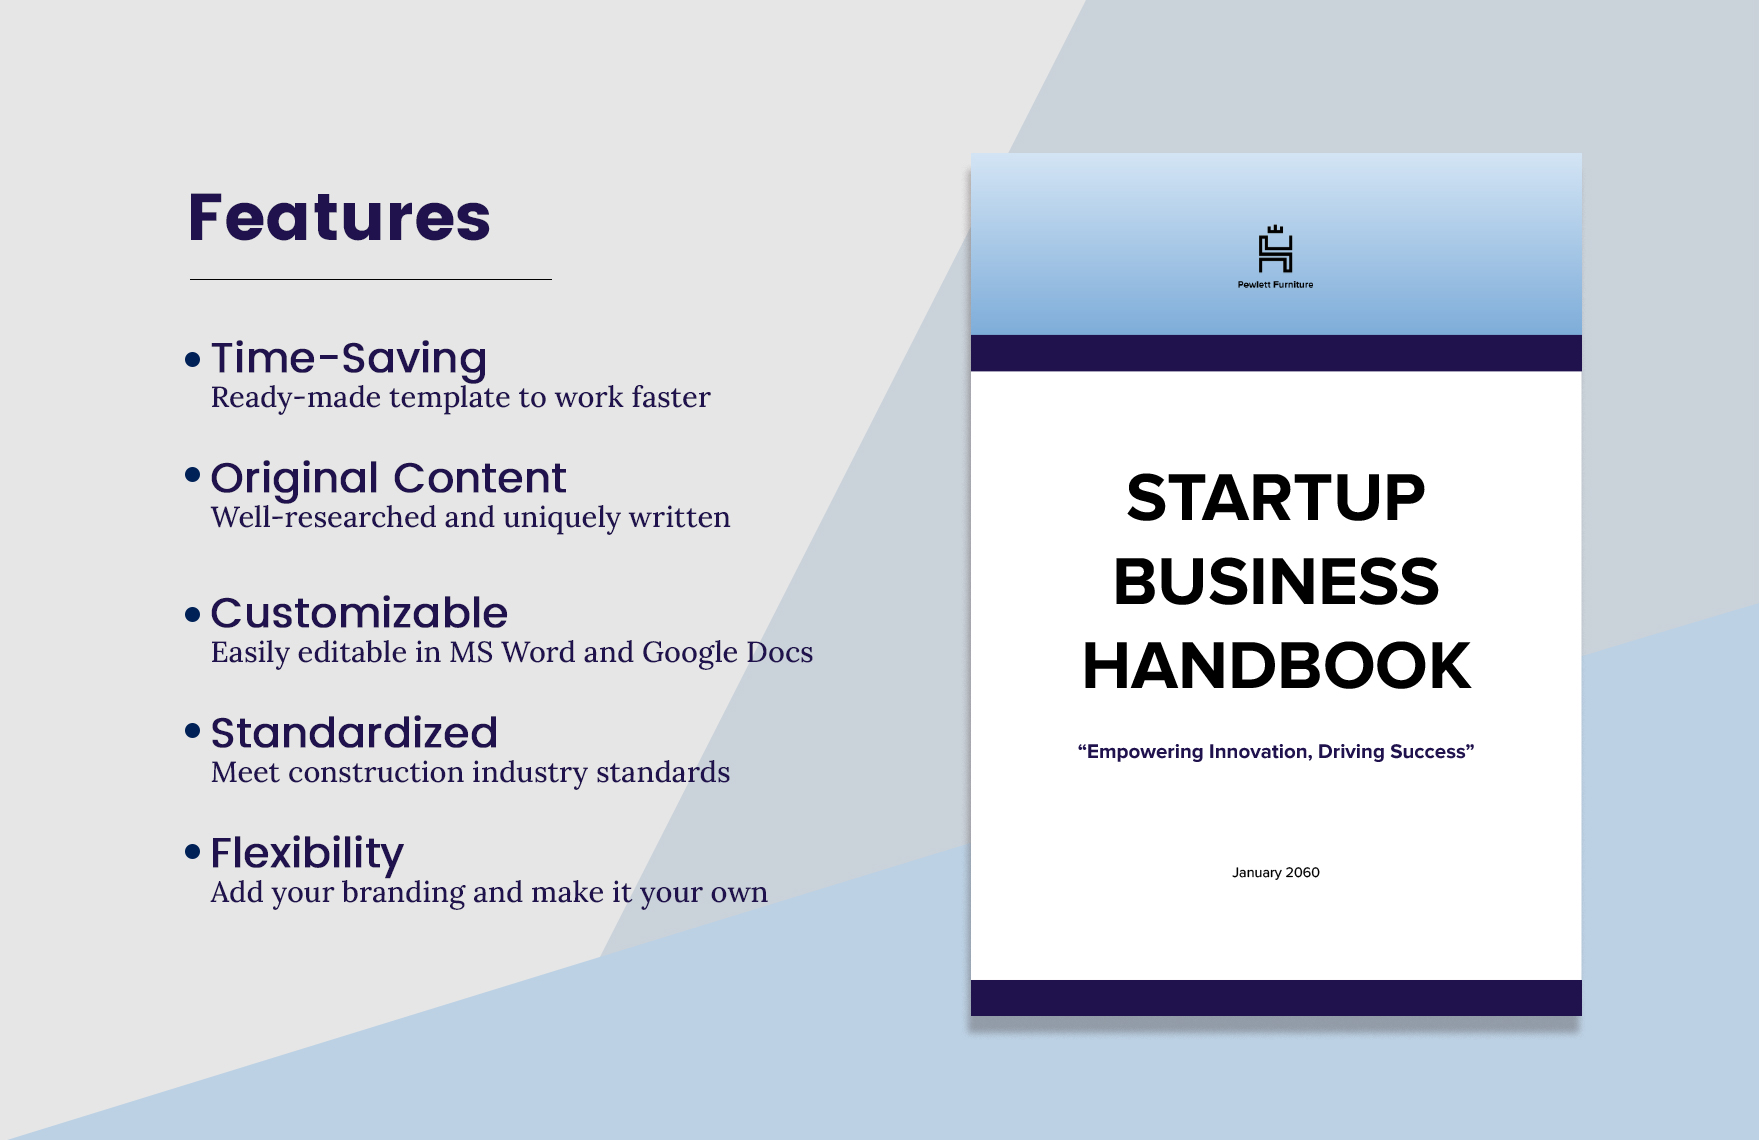 Startup Business Handbook Template